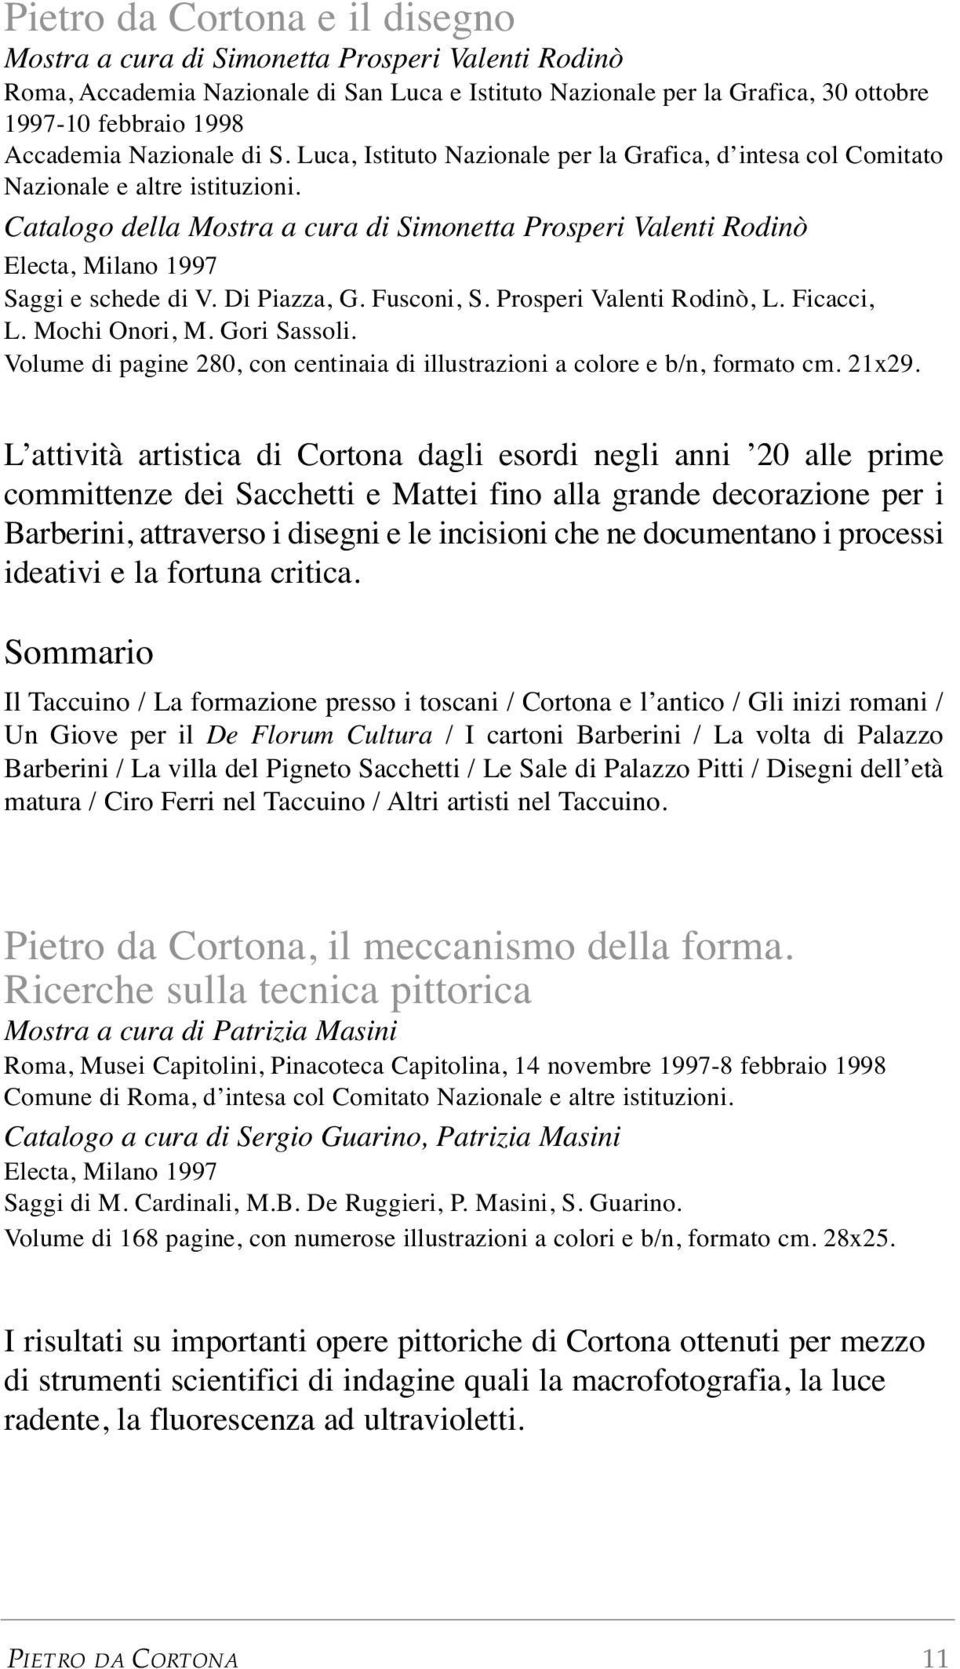 Catalogo della Mostra a cura di Simonetta Prosperi Valenti Rodinò Electa, Milano 1997 Saggi e schede di V. Di Piazza, G. Fusconi, S. Prosperi Valenti Rodinò, L. Ficacci, L. Mochi Onori, M.